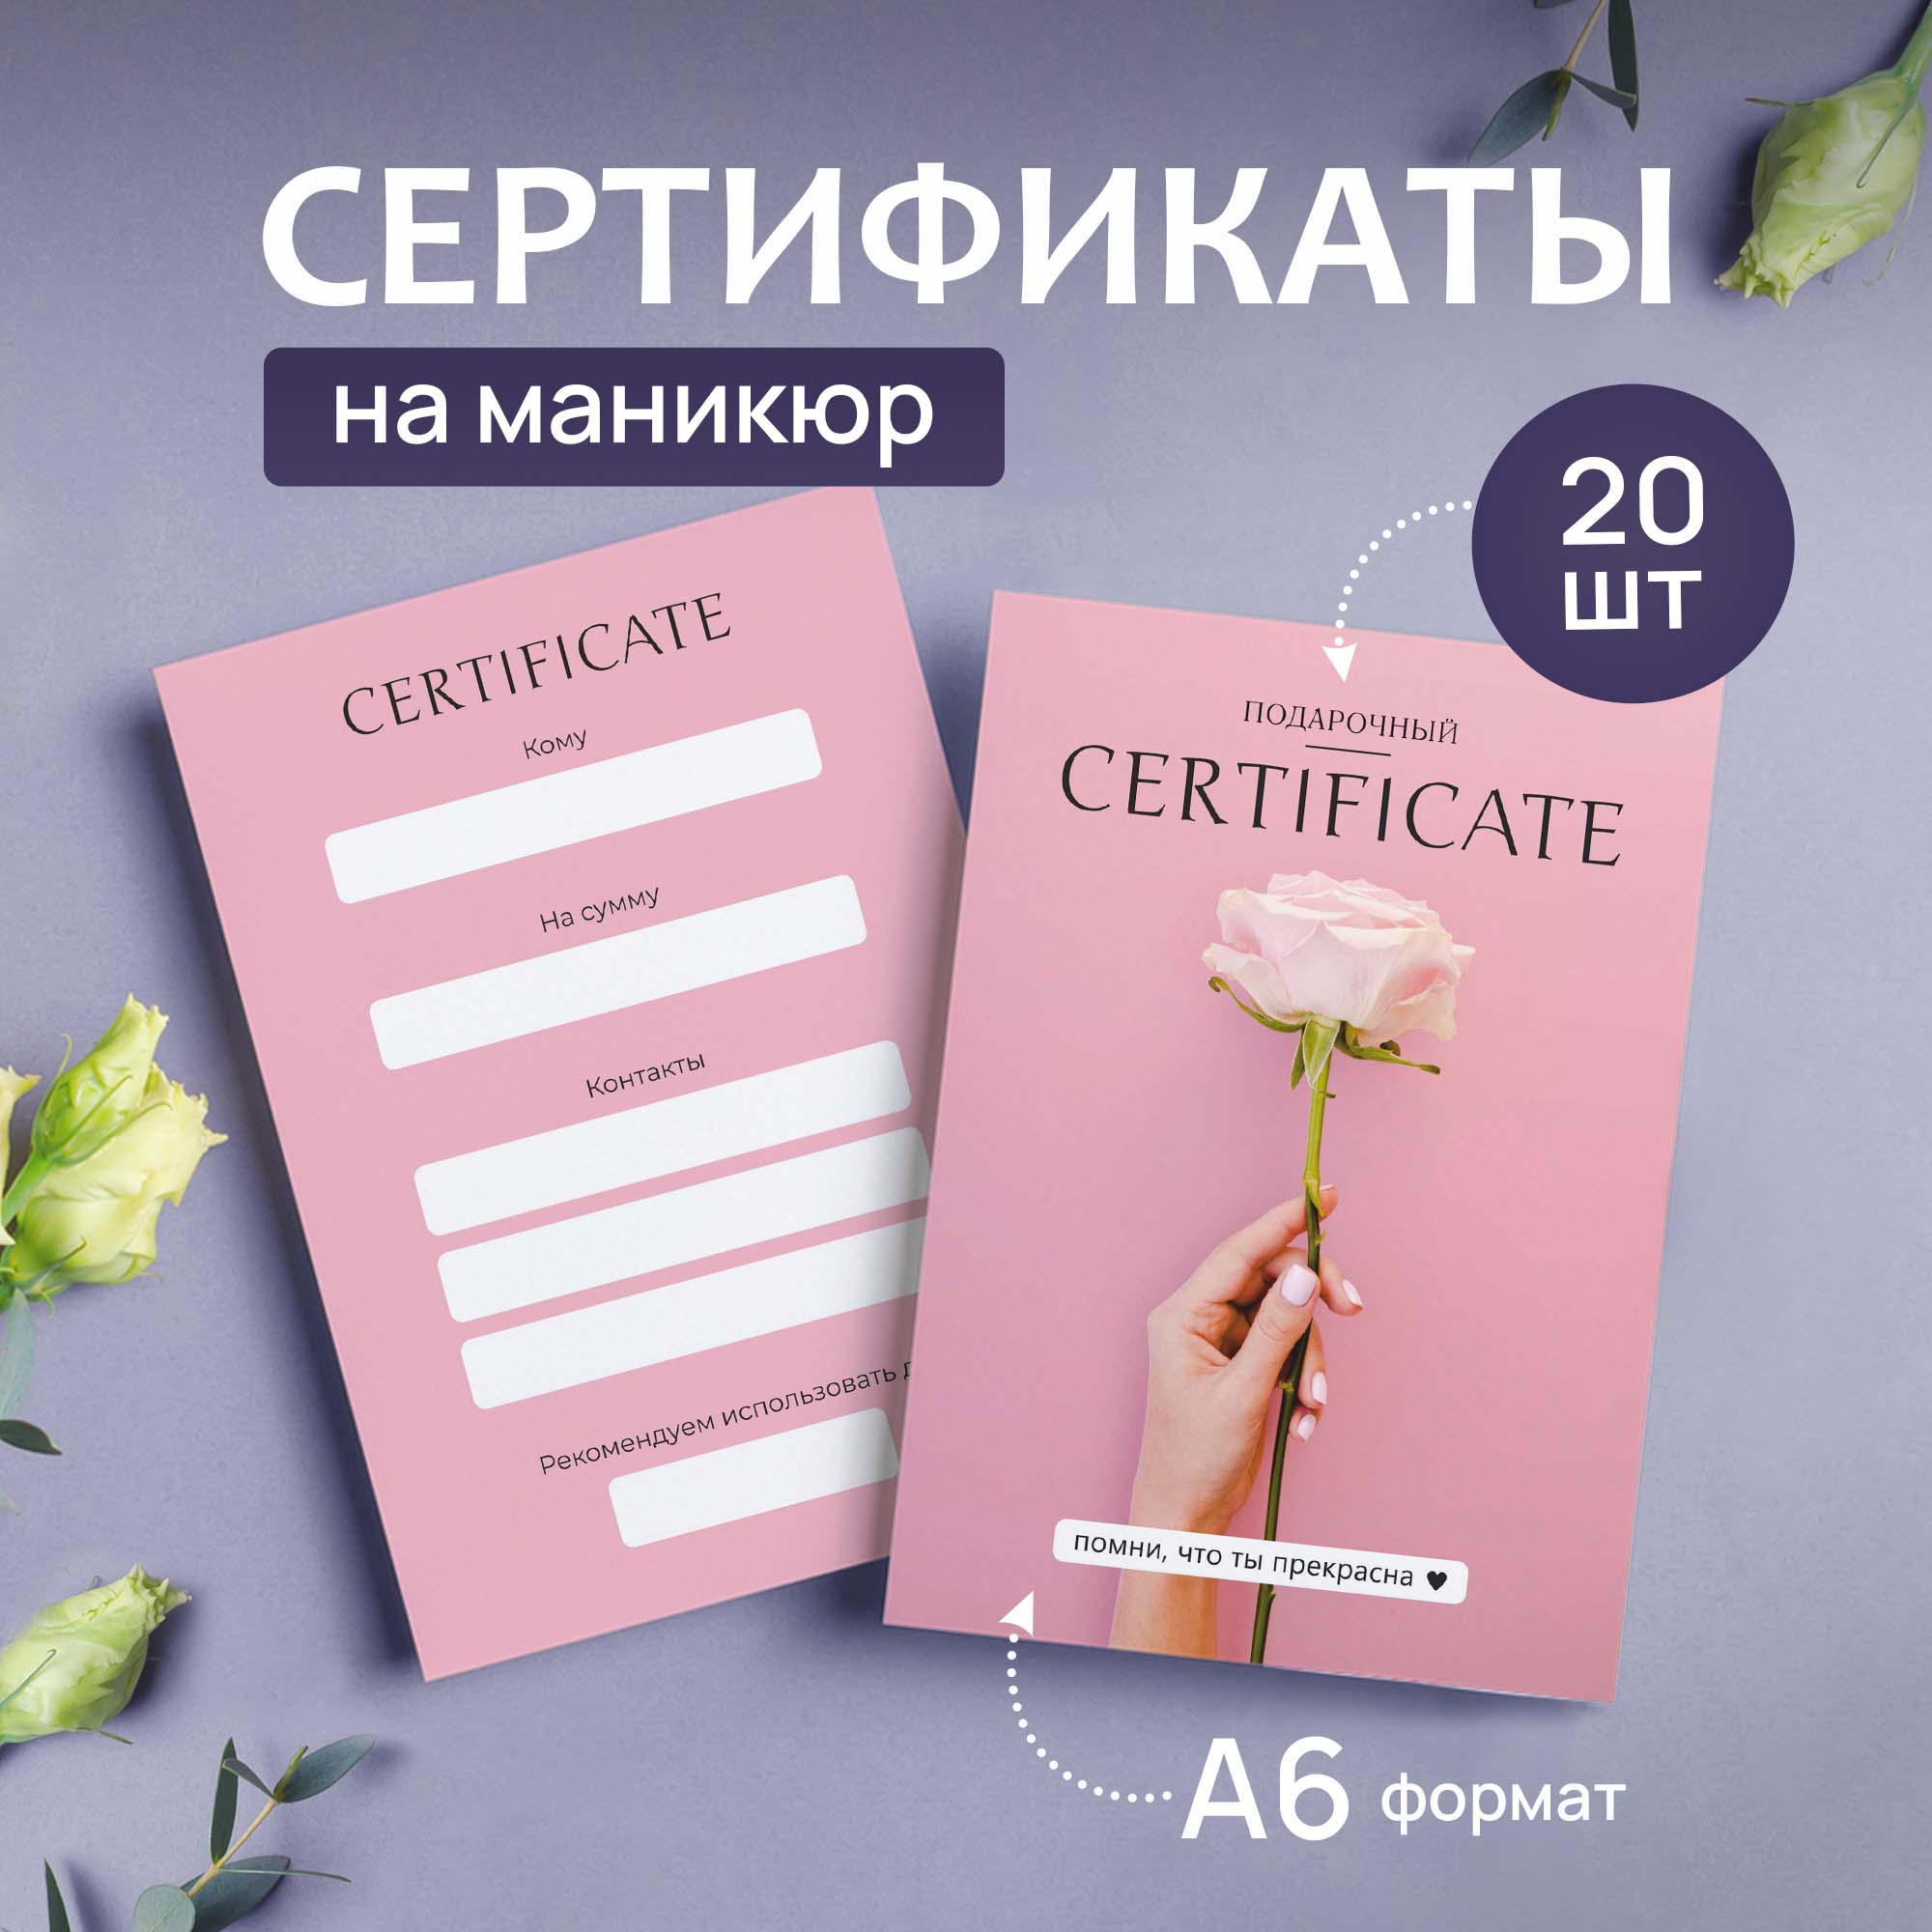 Сертификат Выручалкин, Маникюр (роза), 20 шт, А6